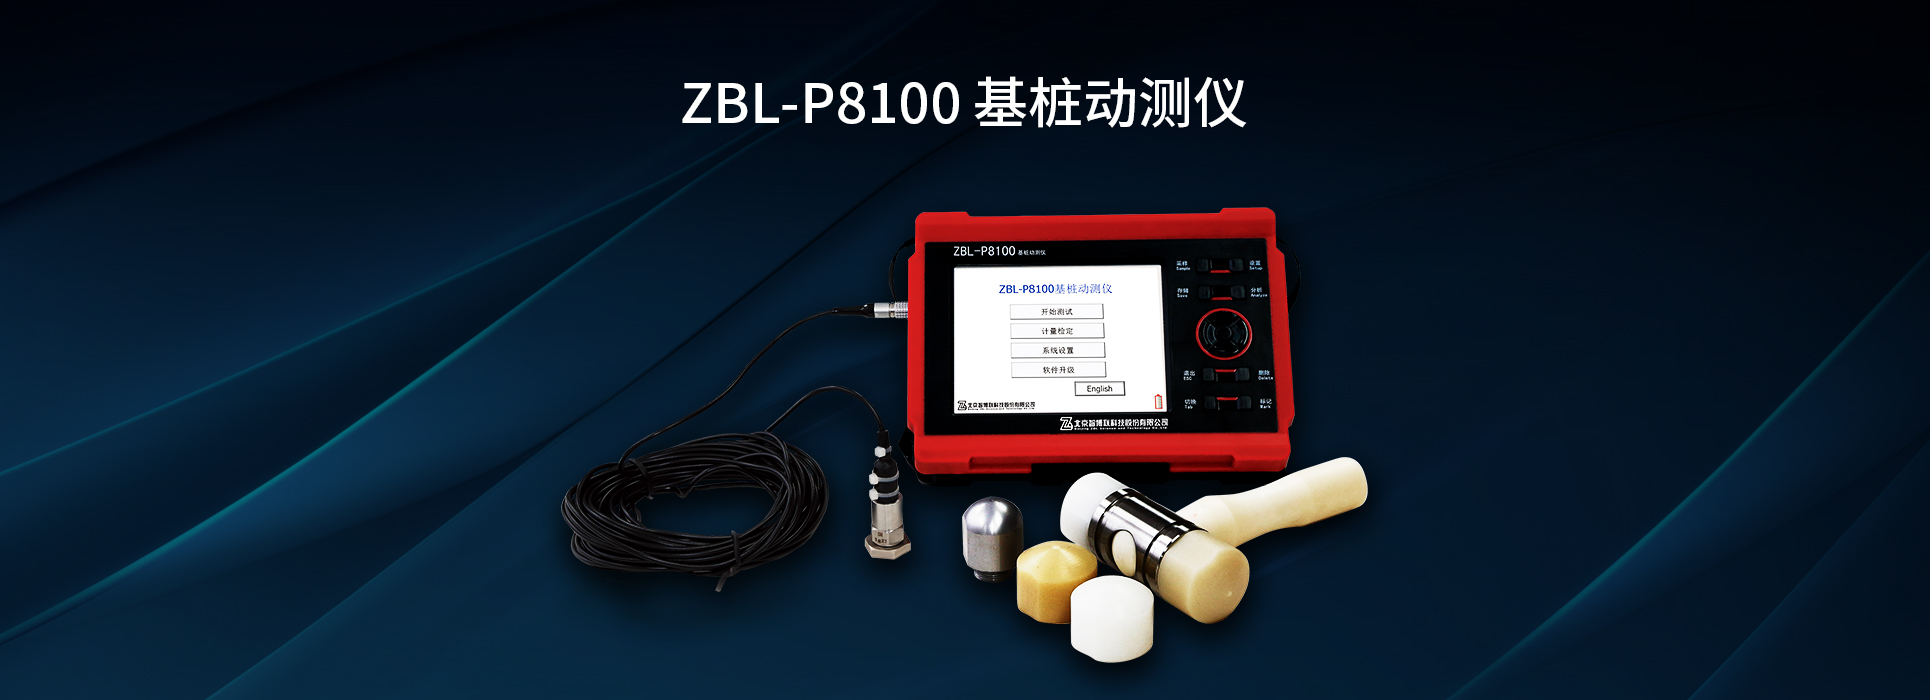 ZBL-P8100基桩动测仪